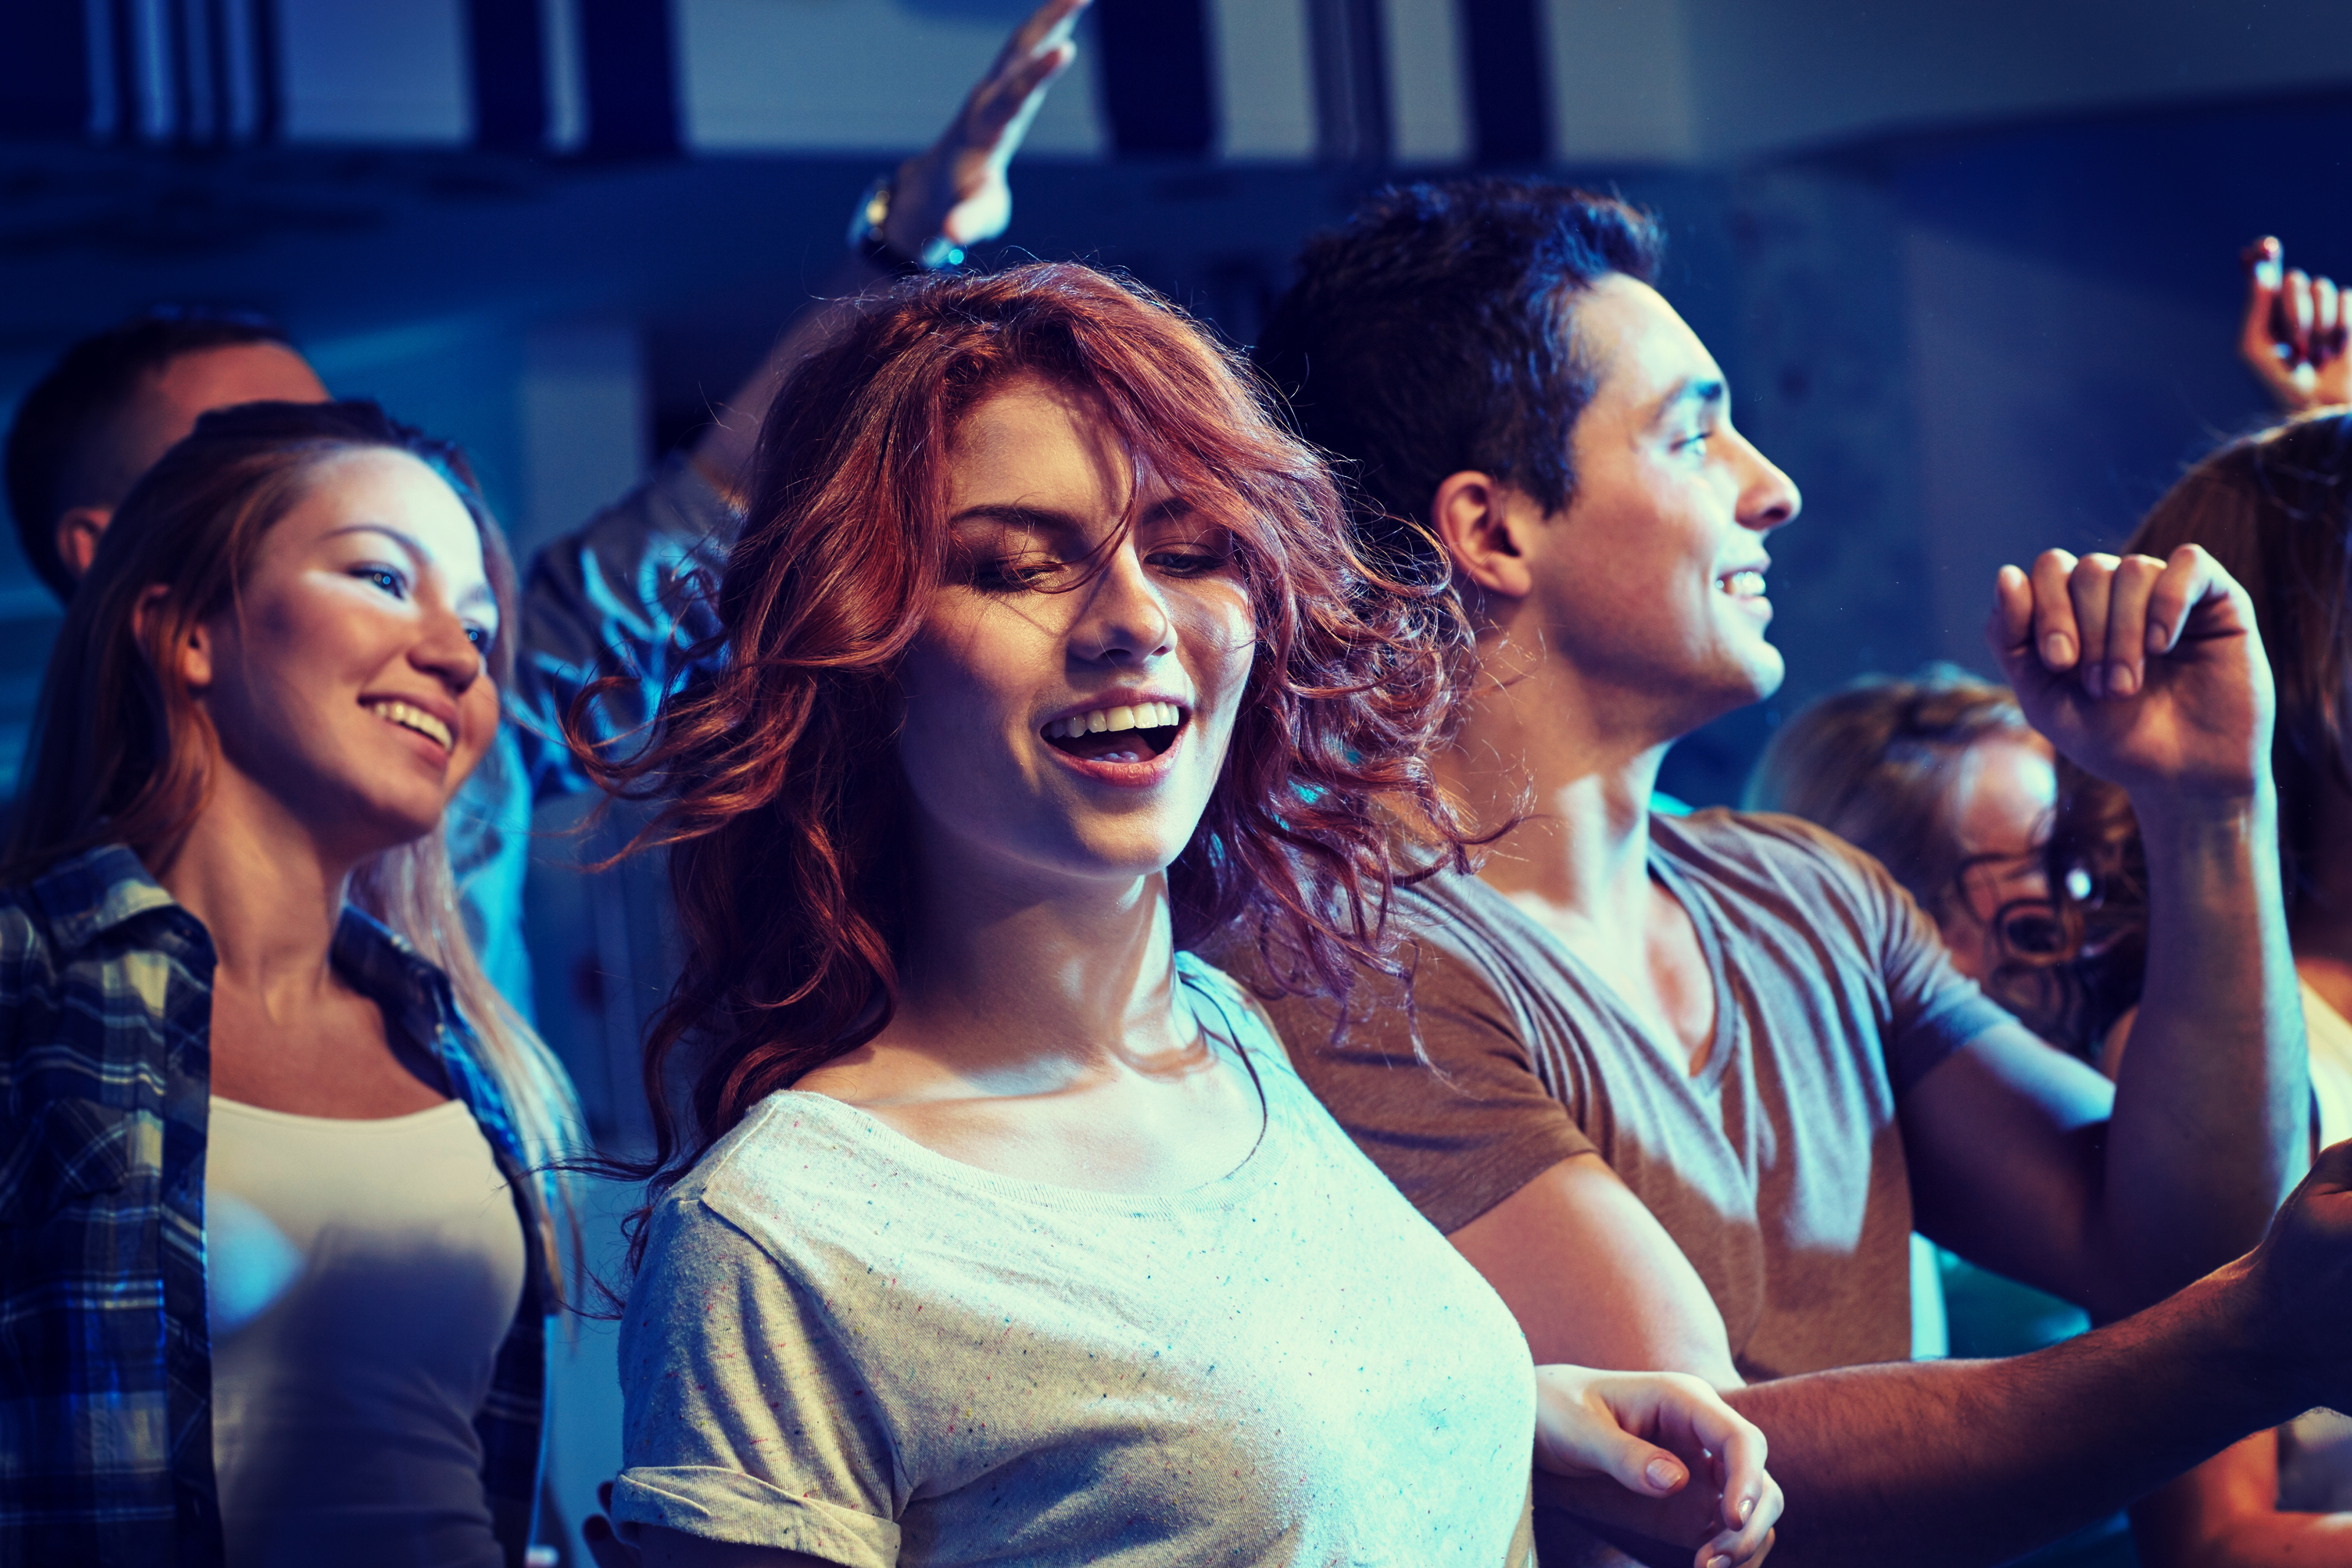 Des jeunes dansent lors d'une fête | Source : Shutterstock